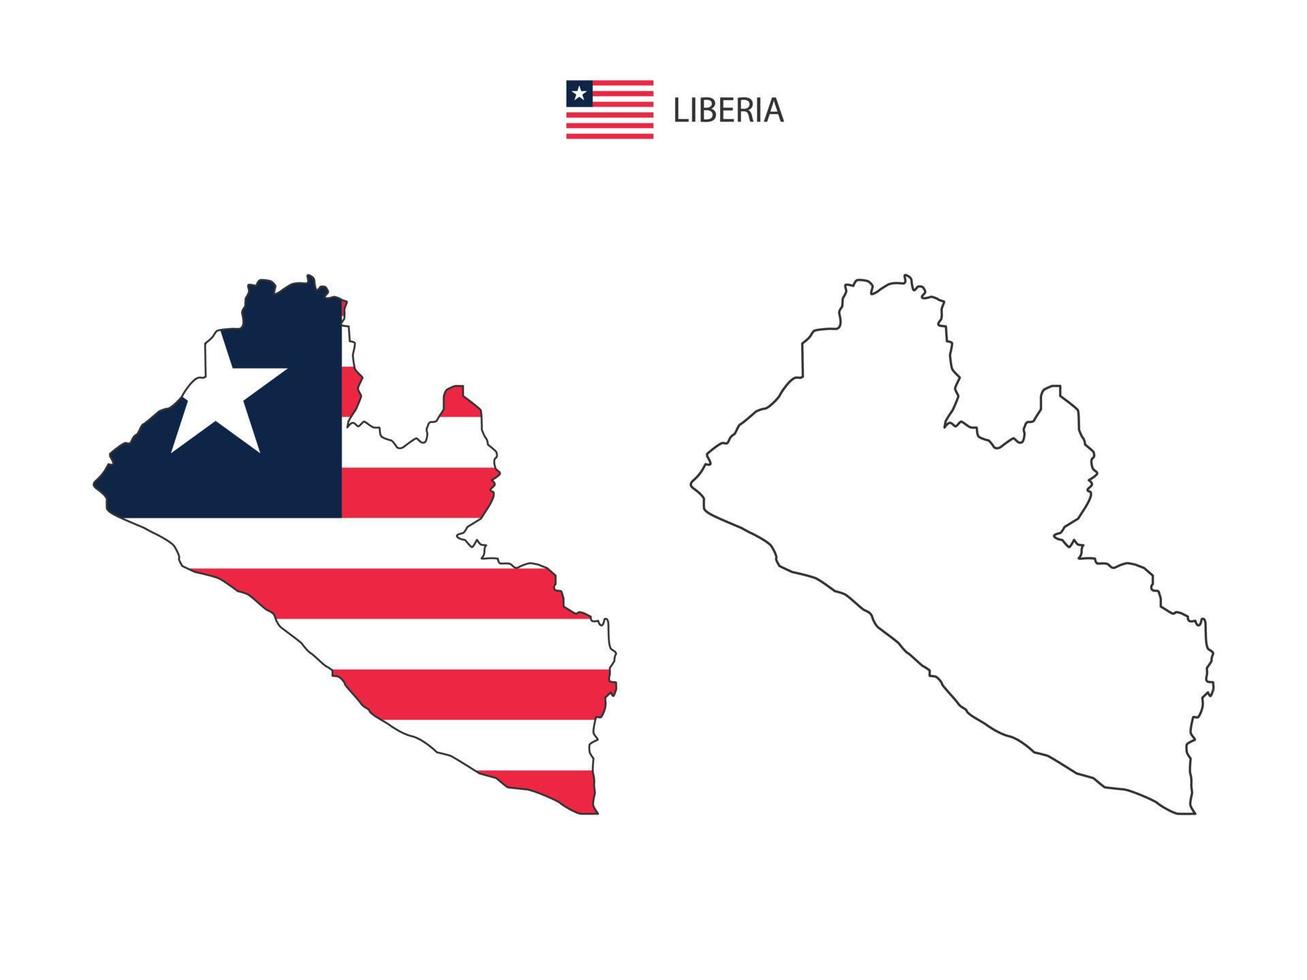 Liberia-Karte Stadtvektor geteilt durch Umriss-Einfachheitsstil. haben 2 Versionen, eine schwarze Version mit dünner Linie und eine Version in der Farbe der Landesflagge. beide Karten waren auf dem weißen Hintergrund. vektor